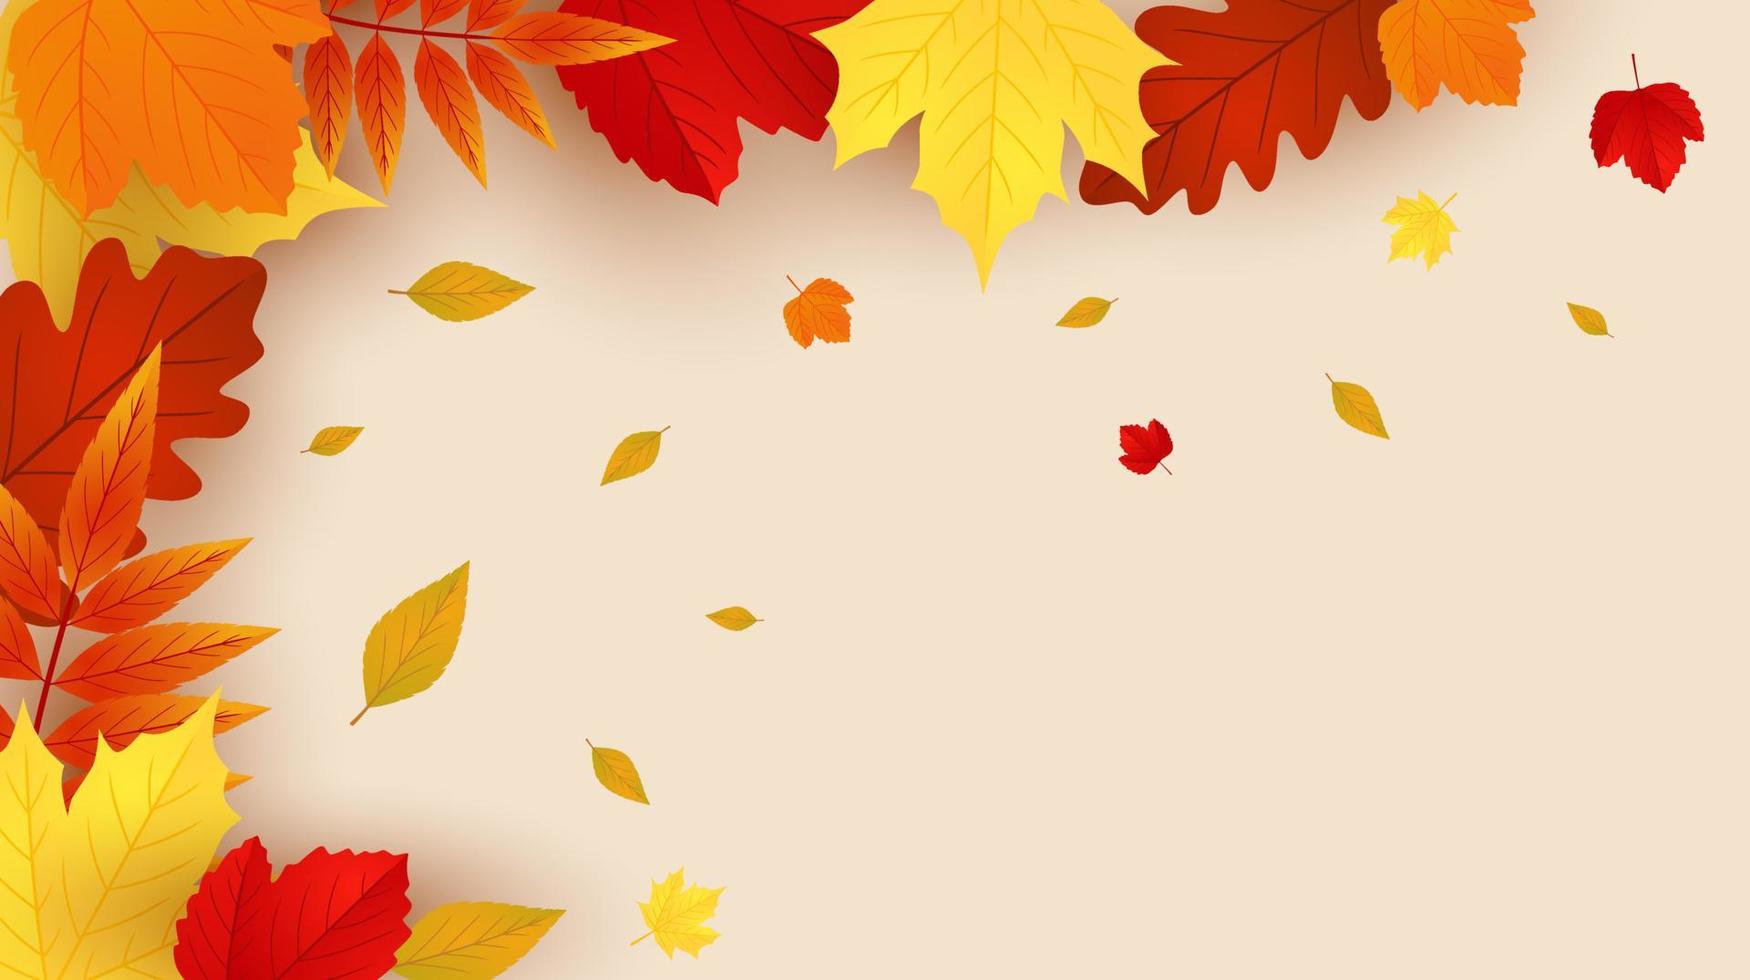 Herbsthintergrund mit Blättern. saisonales Hintergrunddesign. kann für Plakate, Banner, Flyer, Einladungen, Websites oder Grußkarten verwendet werden. Vektor-Illustration vektor